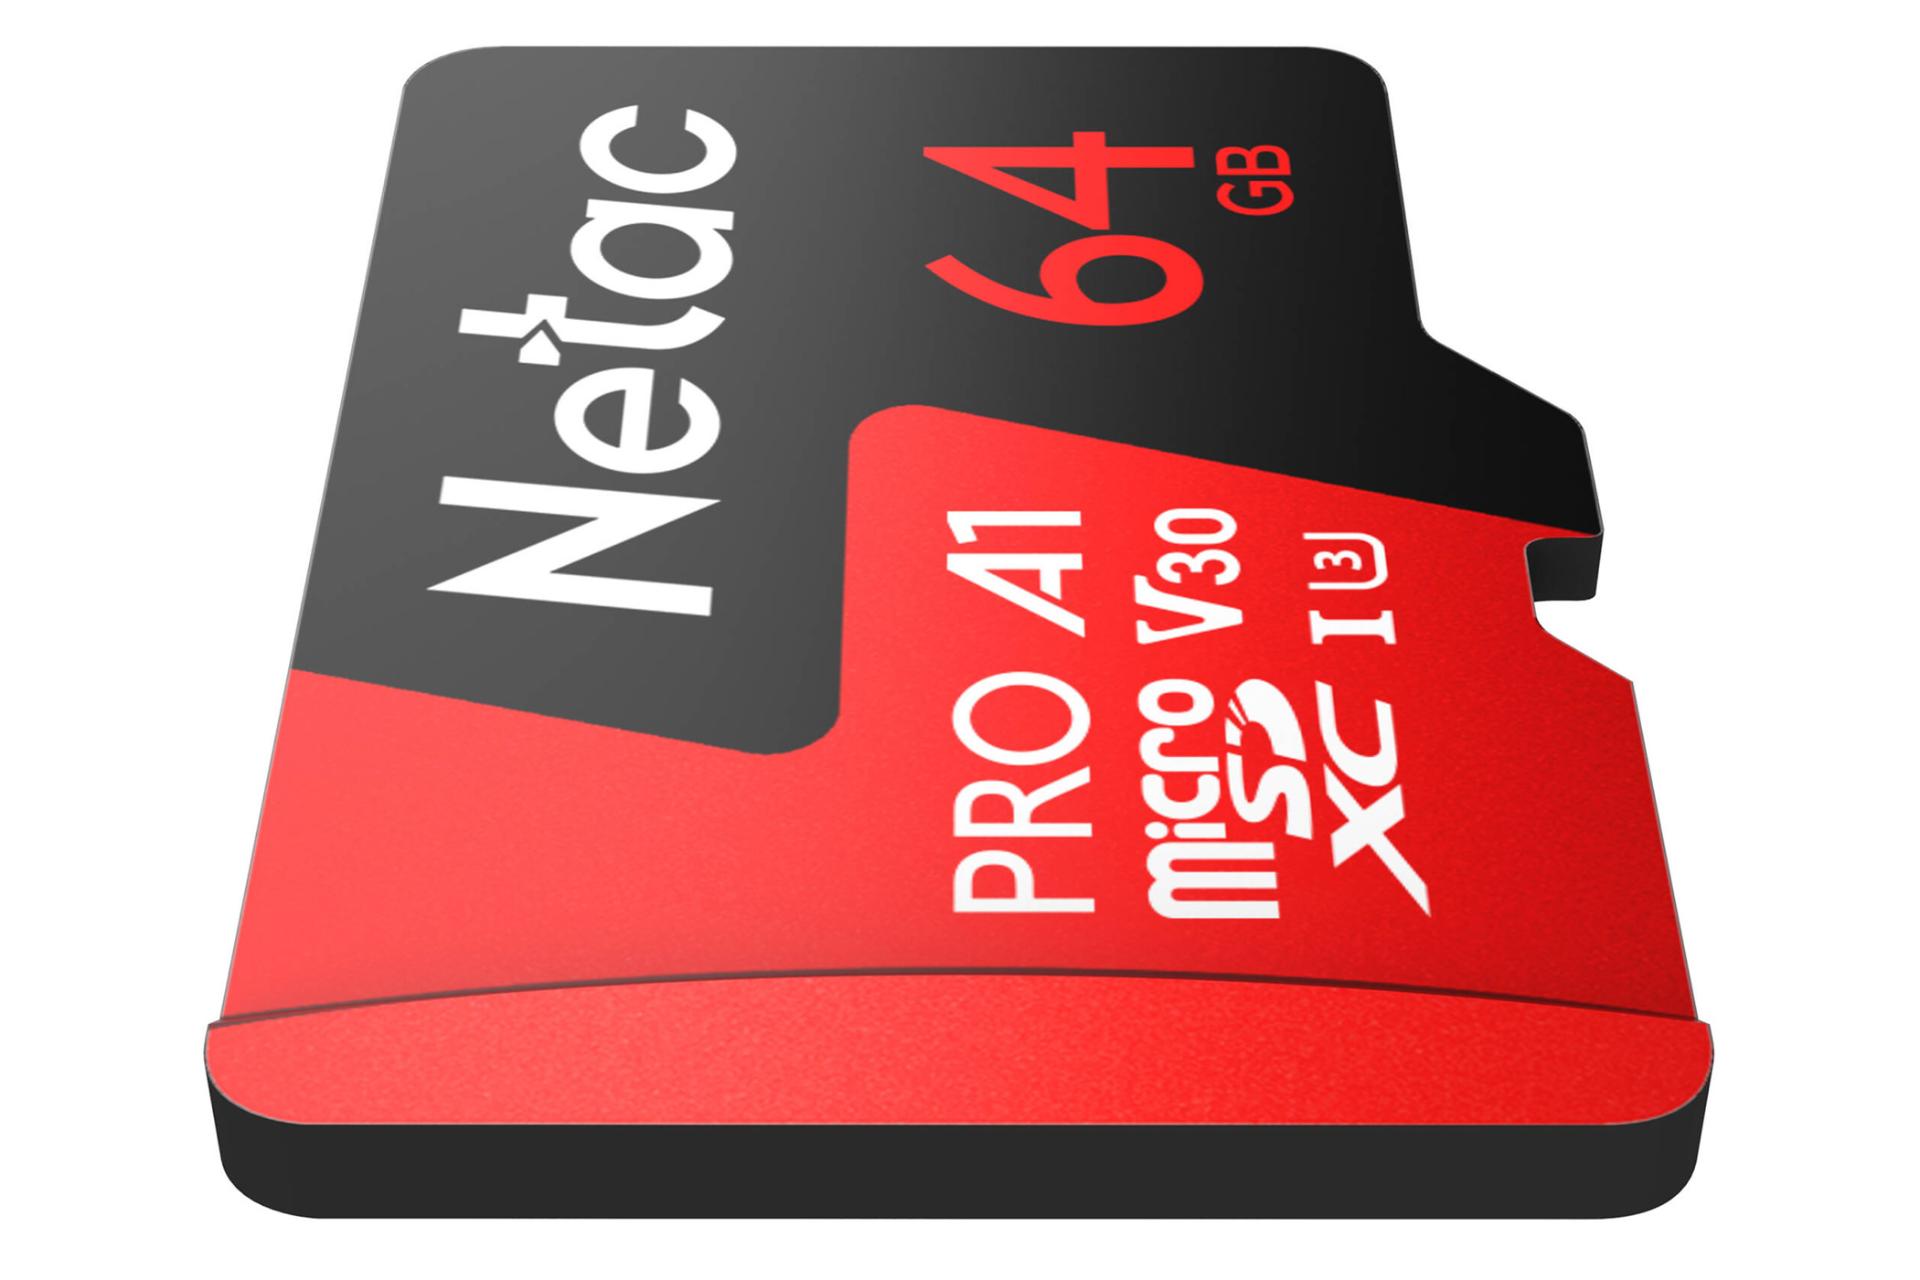 نمای جانبی کارت حافظه نتاک microSDXC ظرفیت 64 گیگابایت مدل P500 Extreme Pro V30 A1